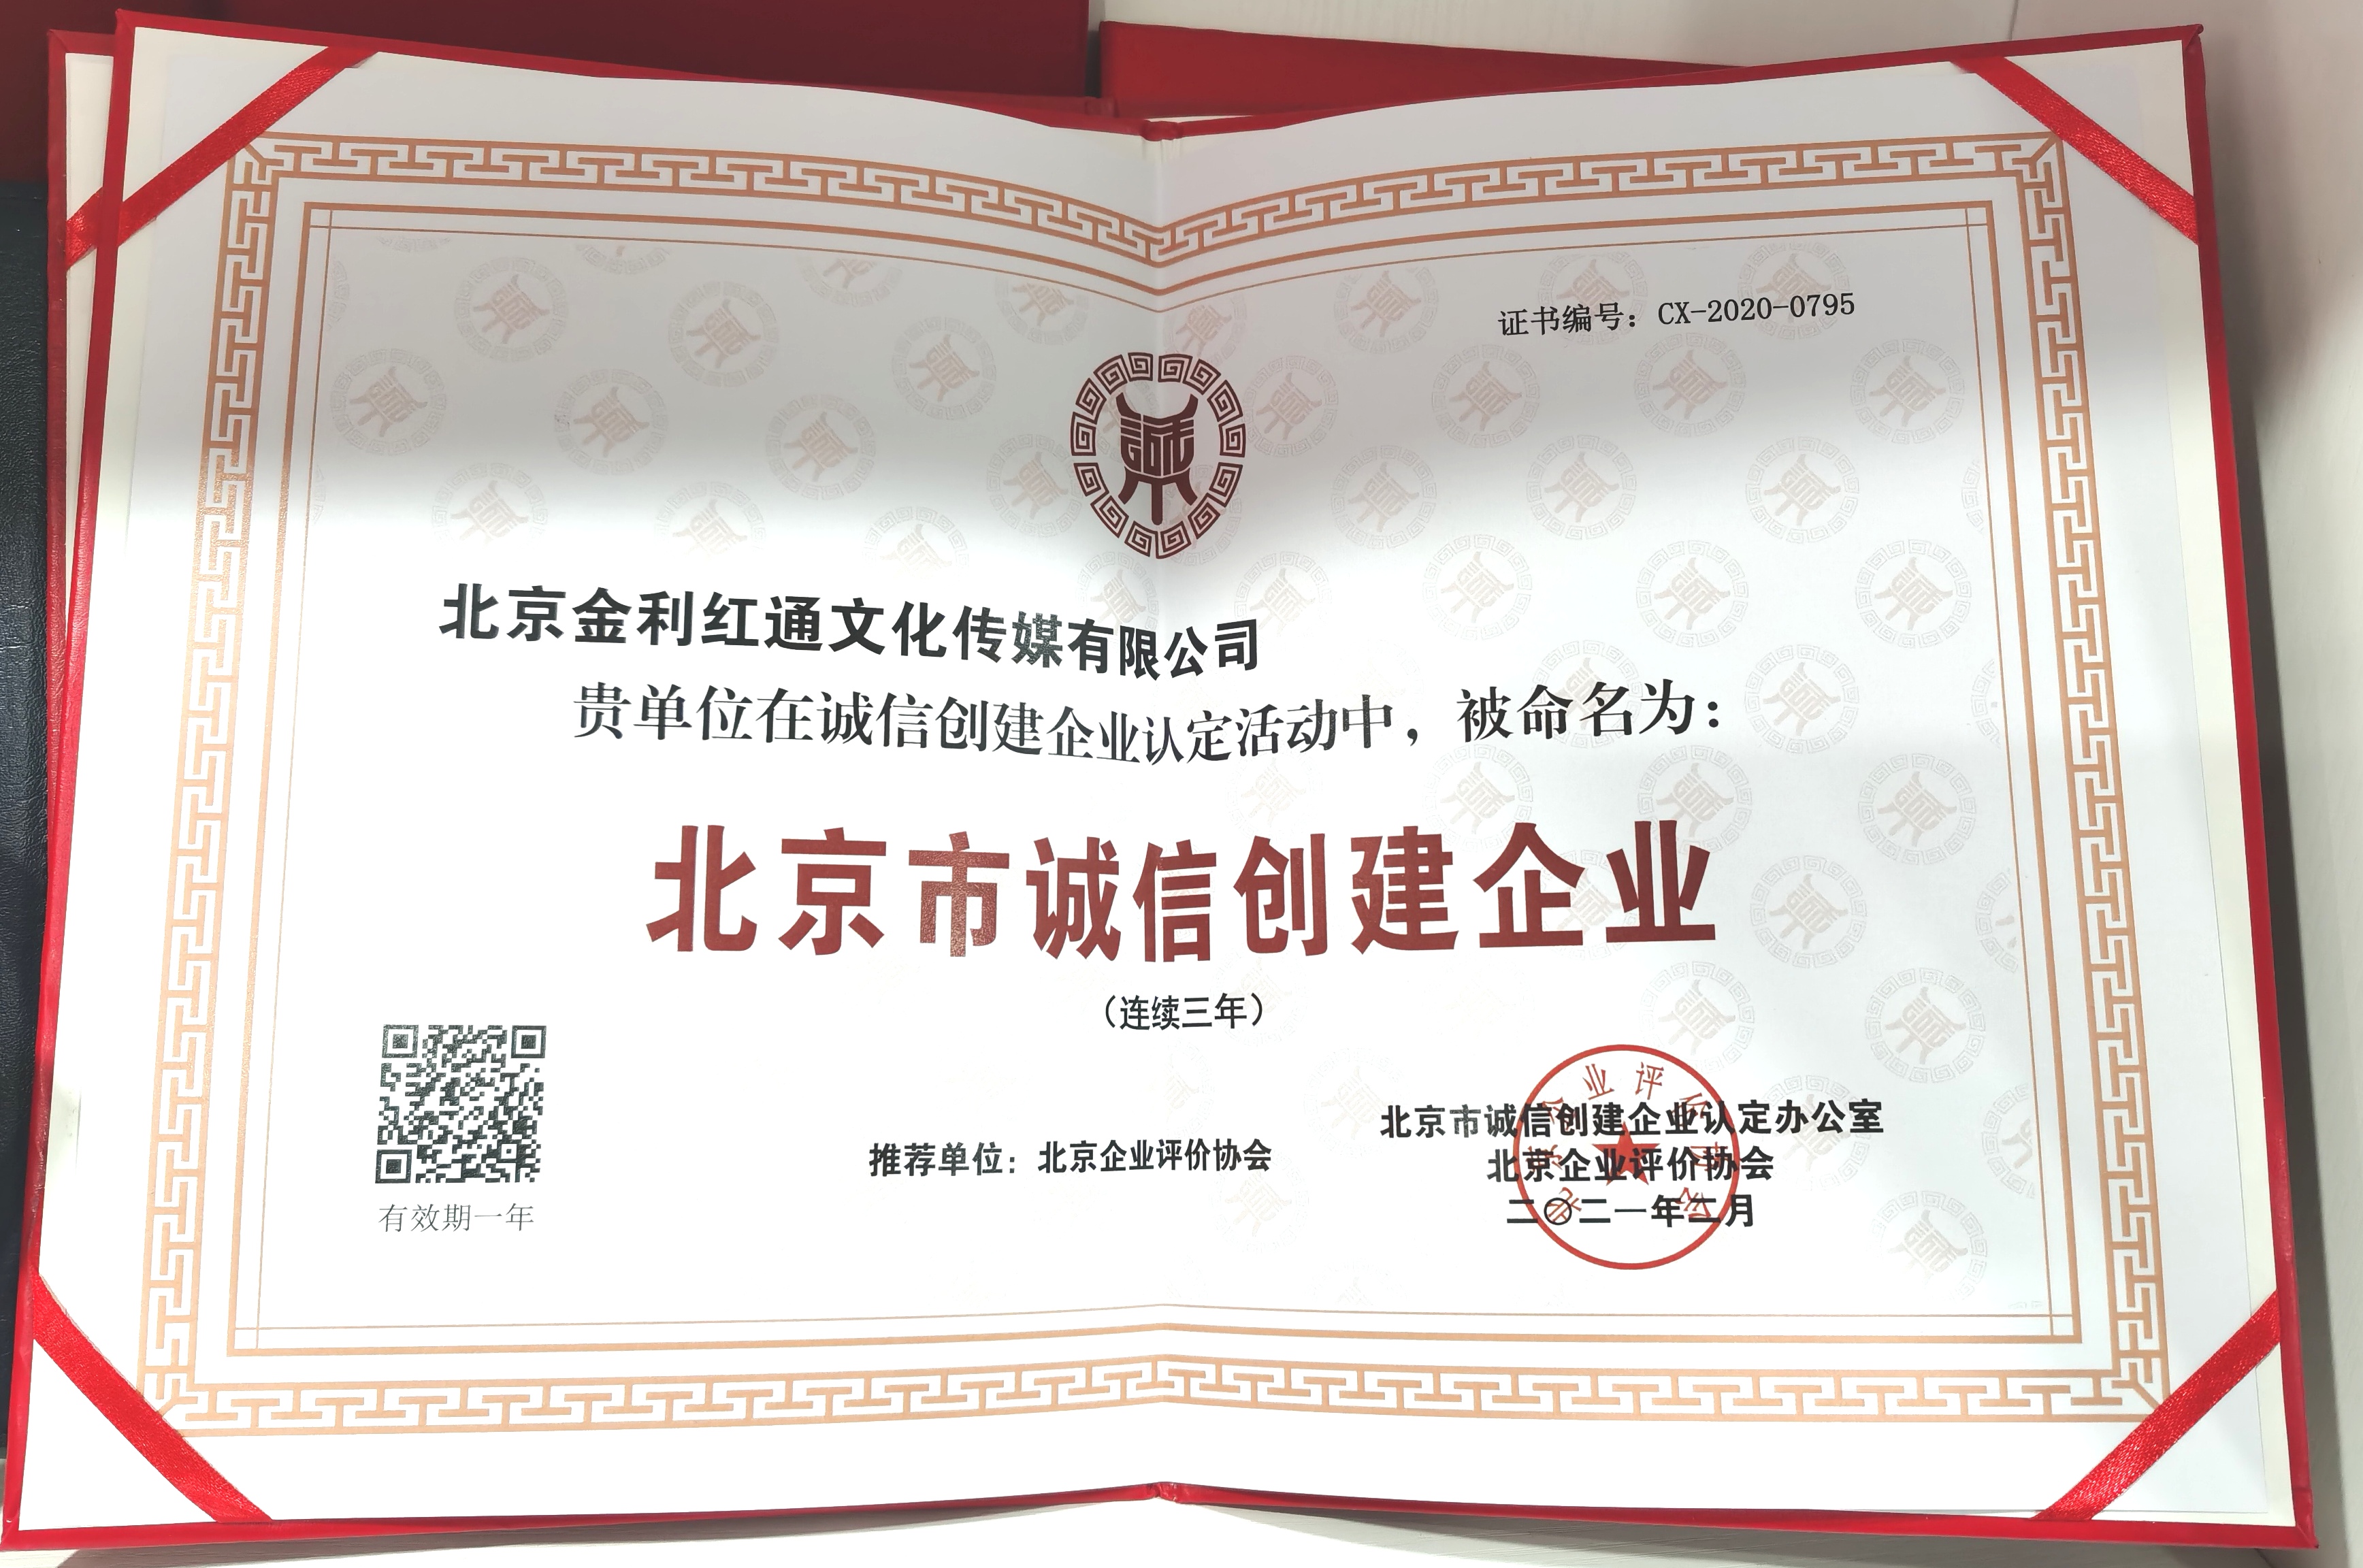 金利红通连续三年获“北京市诚信企业”荣誉称号(图1)